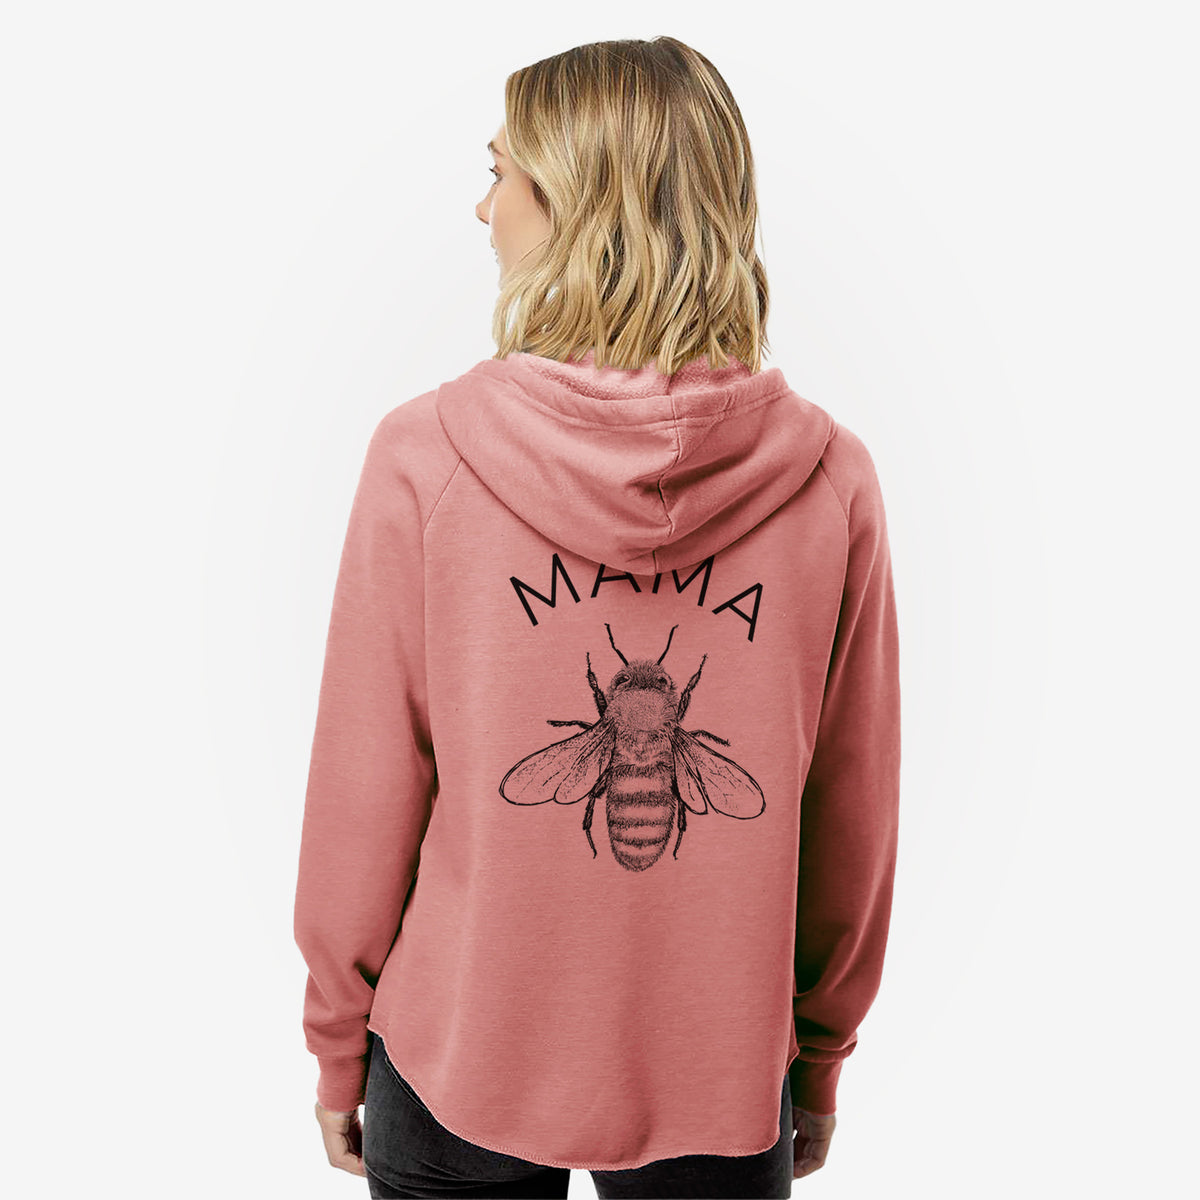 Mama Bee - Women&#39;s Cali Wave Zip-Up Sweatshirt